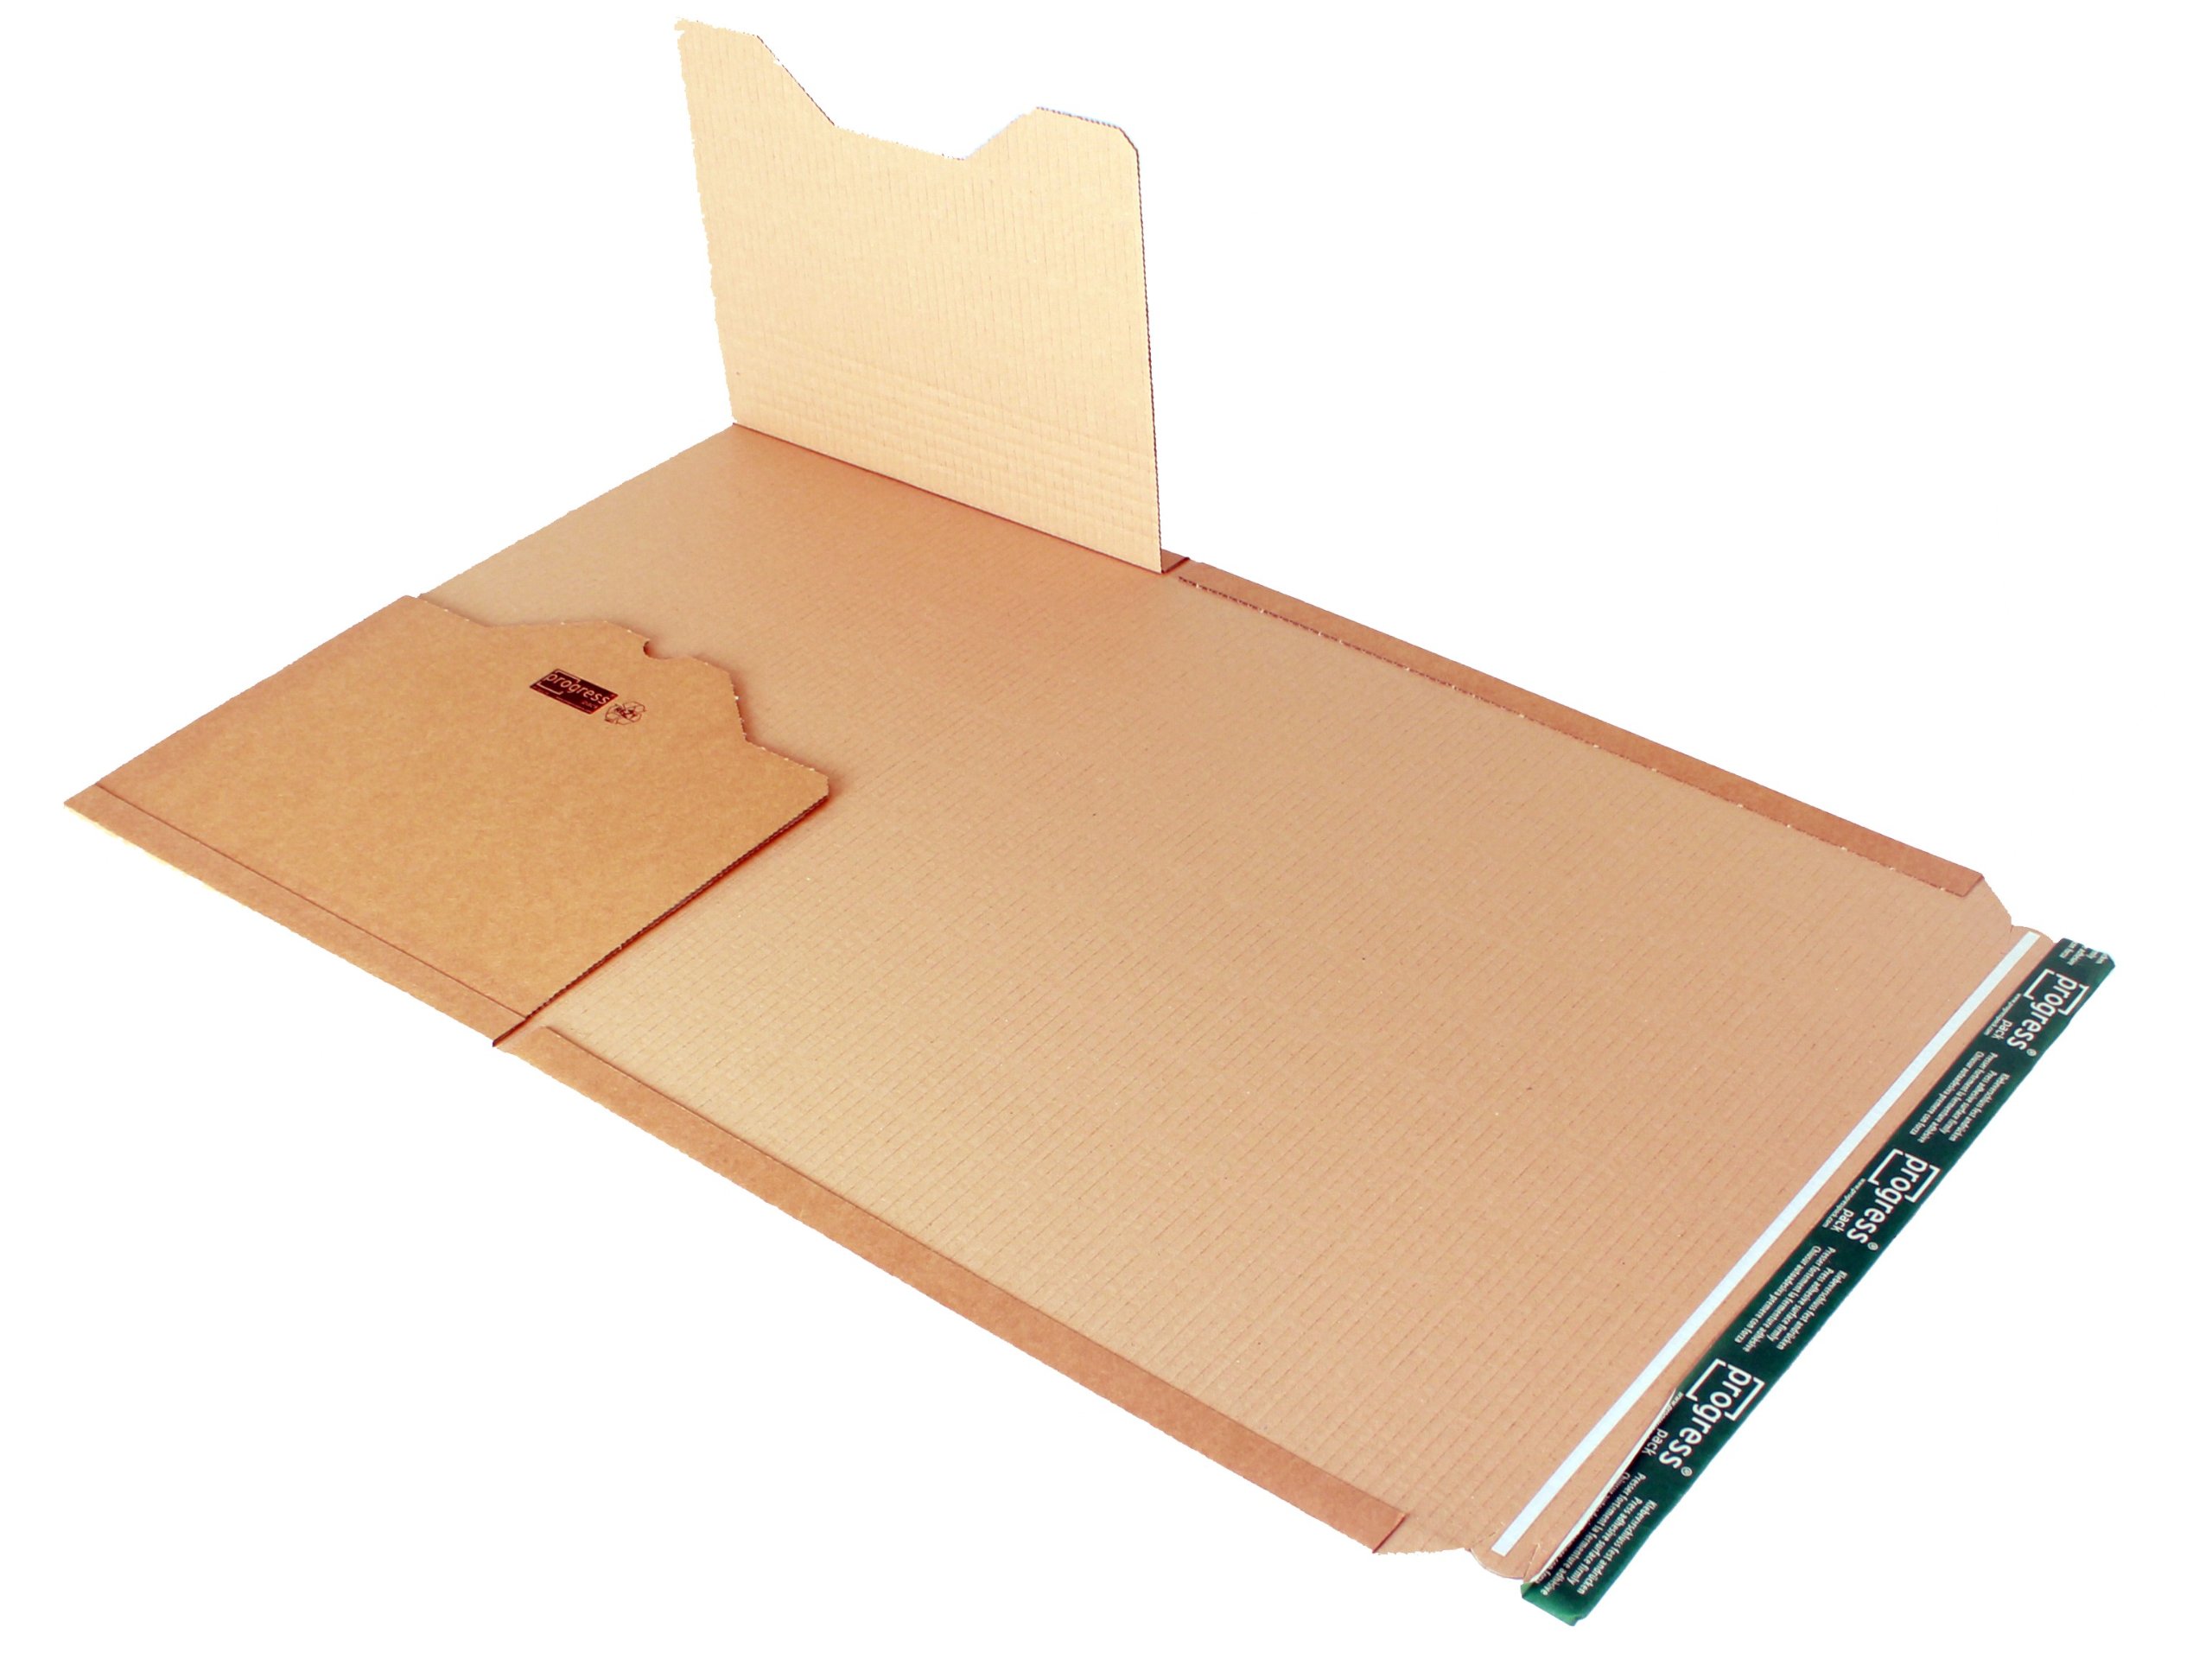 progressPACK Universal-Versandverpackung Premium PP B02.18 aus Wellpappe, DIN A3, 455 x 325 x bis 80 mm, 20-er Pack, braun